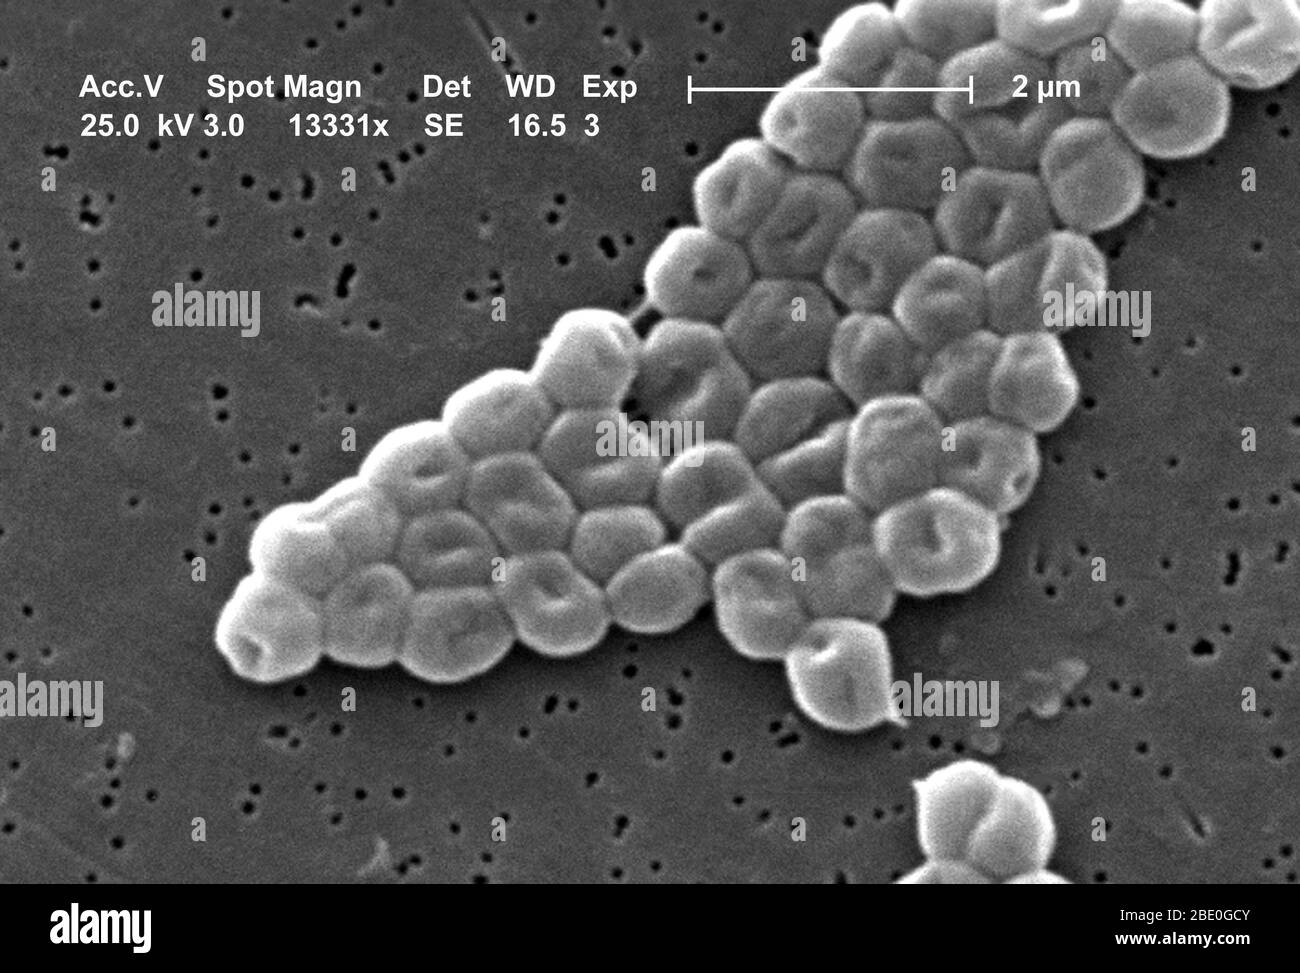 Ce mes représente un groupe fortement amplifié de bactéries Gram-négatives, non motiles Acinetobacter baumannii; Mag - 13331x. Les membres du genre Acinetobacter sont des tiges non motiles, de 1 à 1,5 µm de diamètre et de 1,5 à 2,5 µm de longueur, qui deviennent sphériques en forme pendant leur phase stationnaire de croissance. Acinetobacter spp. Sont largement distribués dans la nature et sont une flore normale sur la peau. Certains membres du genre sont importants parce qu'ils sont une cause émergente d'infections pulmonaires acquises à l'hôpital, c'est-à-dire les pneumoniae, les infections hémopathiques et les infections de la plaie. Banque D'Images